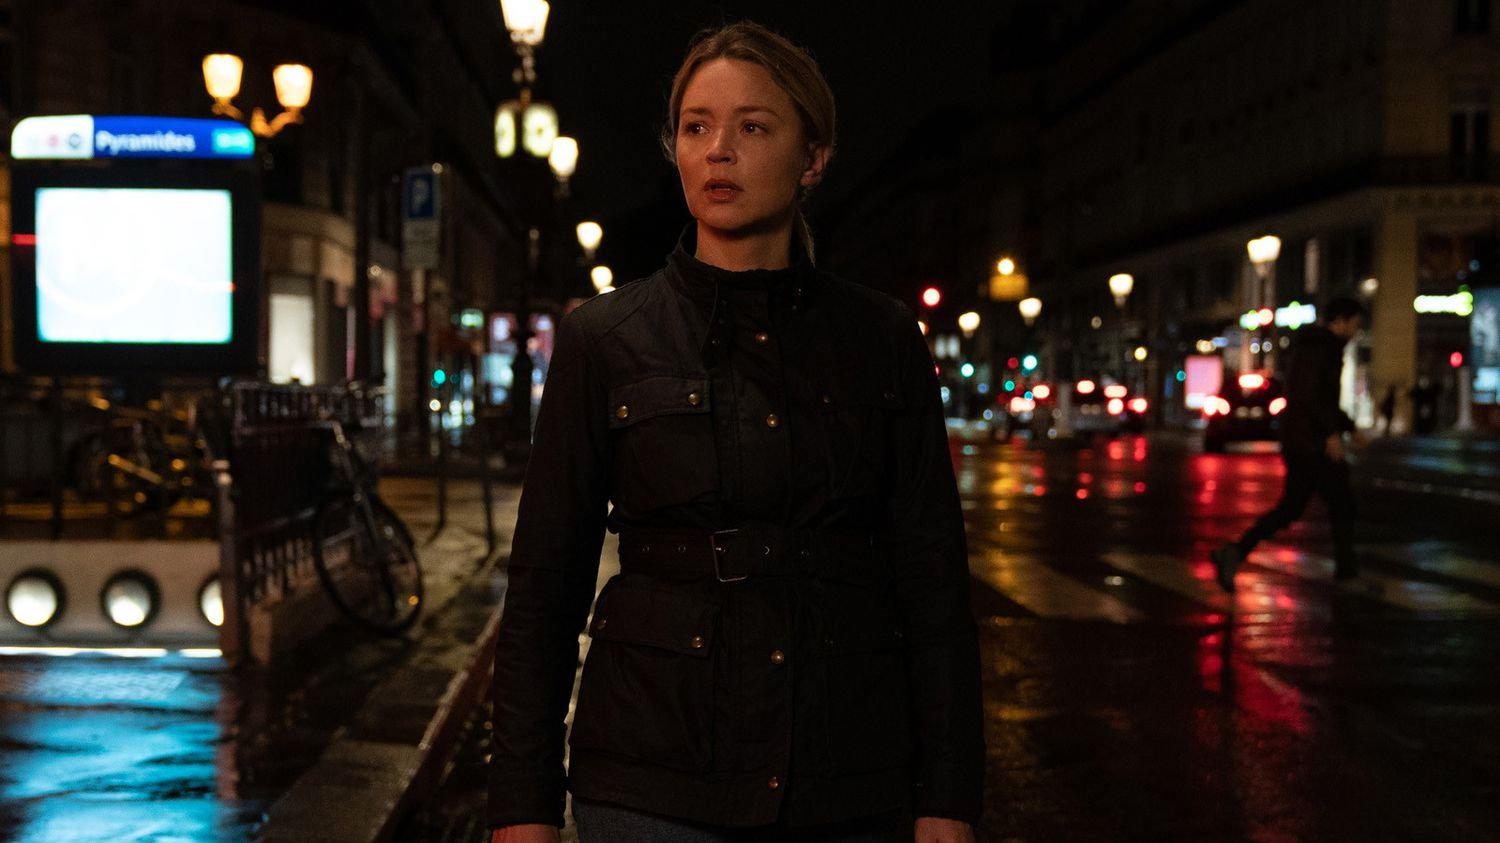 Virginie Efira spelar huvudrollen i filmen "Minnas Paris", som är inspirerad av attacken mot Bataclan i Paris. Pressbild.